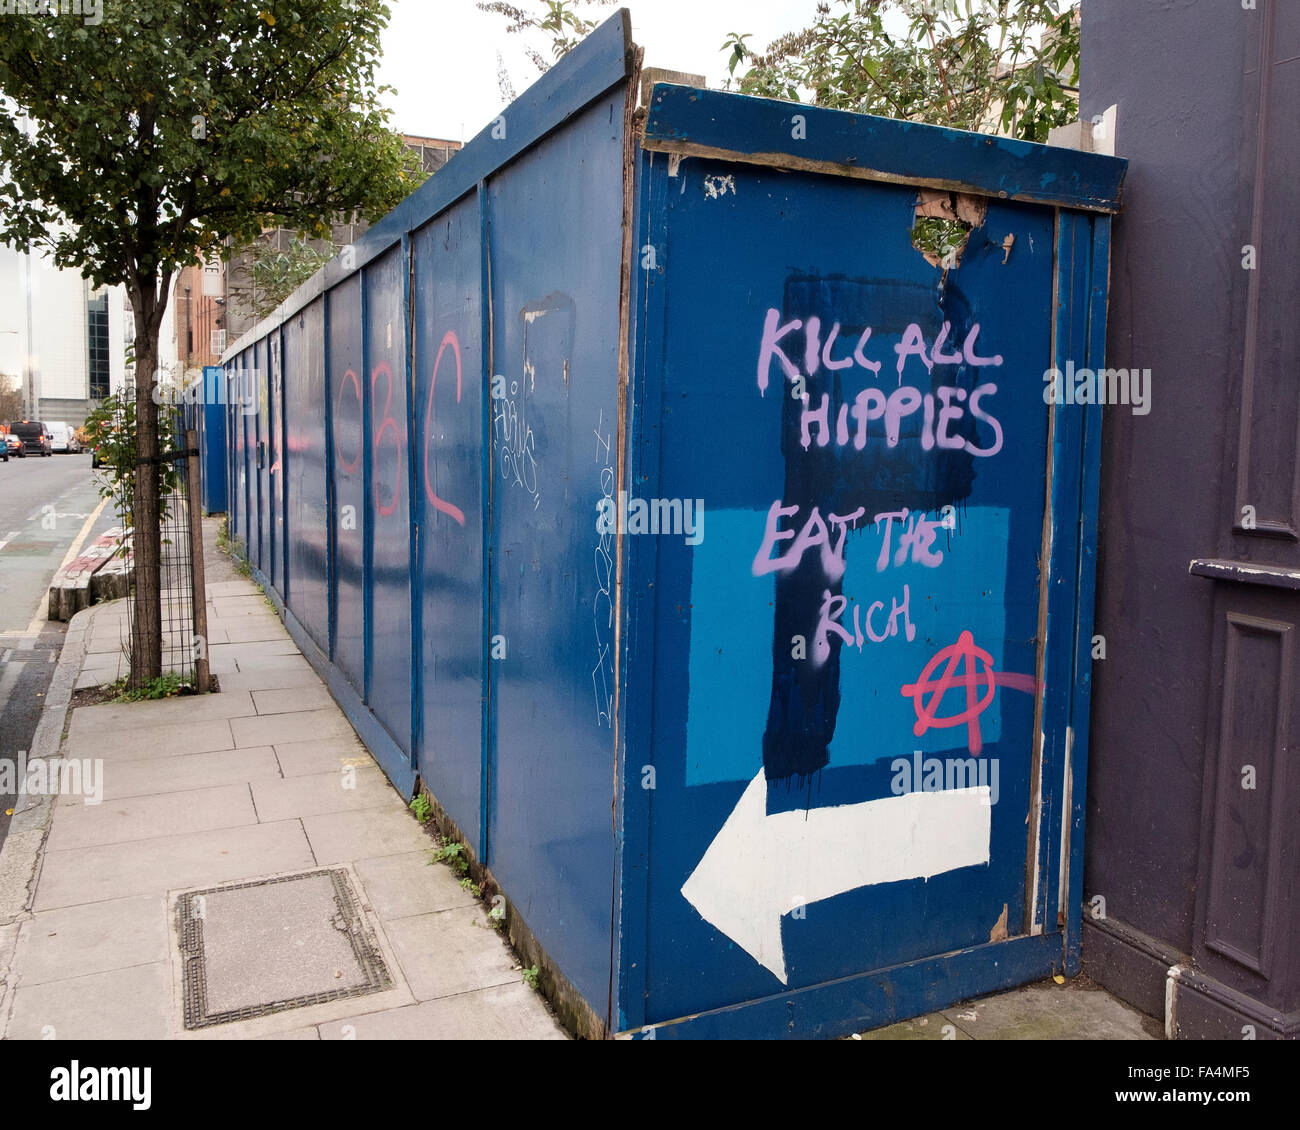 Leman Street, London, 25. November 2015: Töte alle Hippies, Essen die reichen - Anti-Hipster-Motto in der Nähe von Aldgate Stockfoto